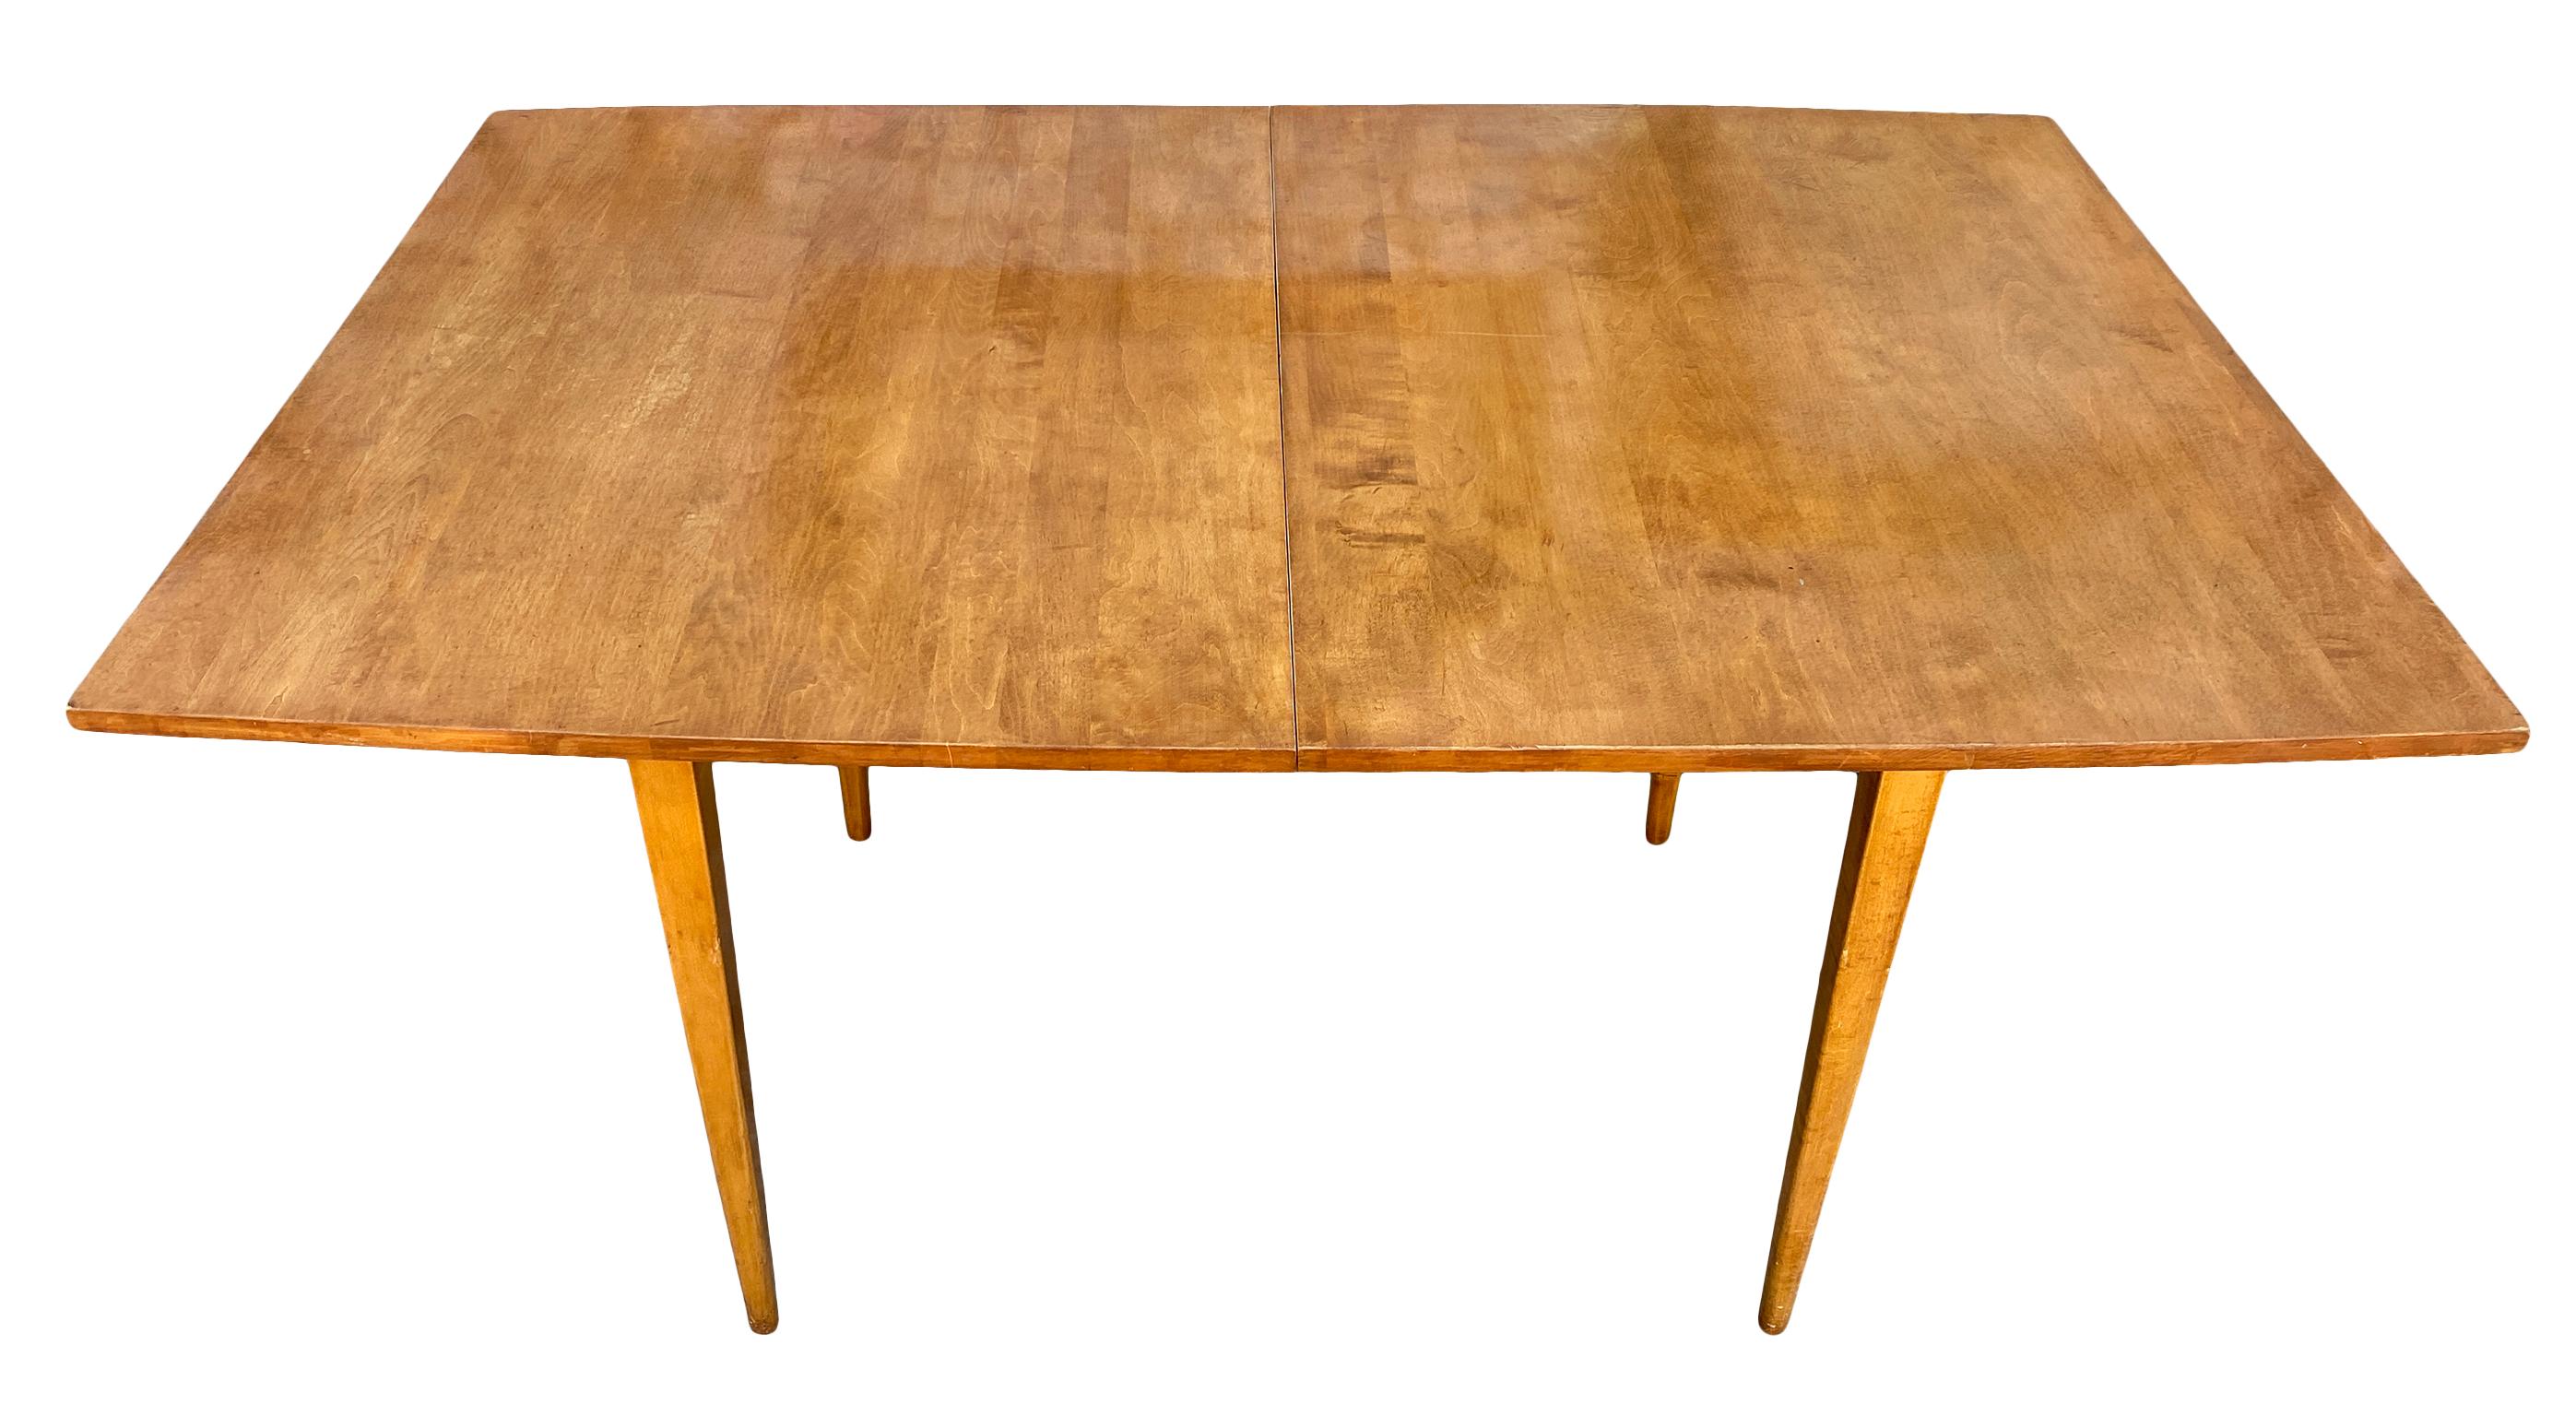 Magnifique table à rallonge en érable massif Paul McCobb du début des années 1950, reposant sur 4 pieds carrés effilés. Superbe plateau de table en érable massif avec une légère conicité à chaque extrémité qui a une finition blonde semi-brillante